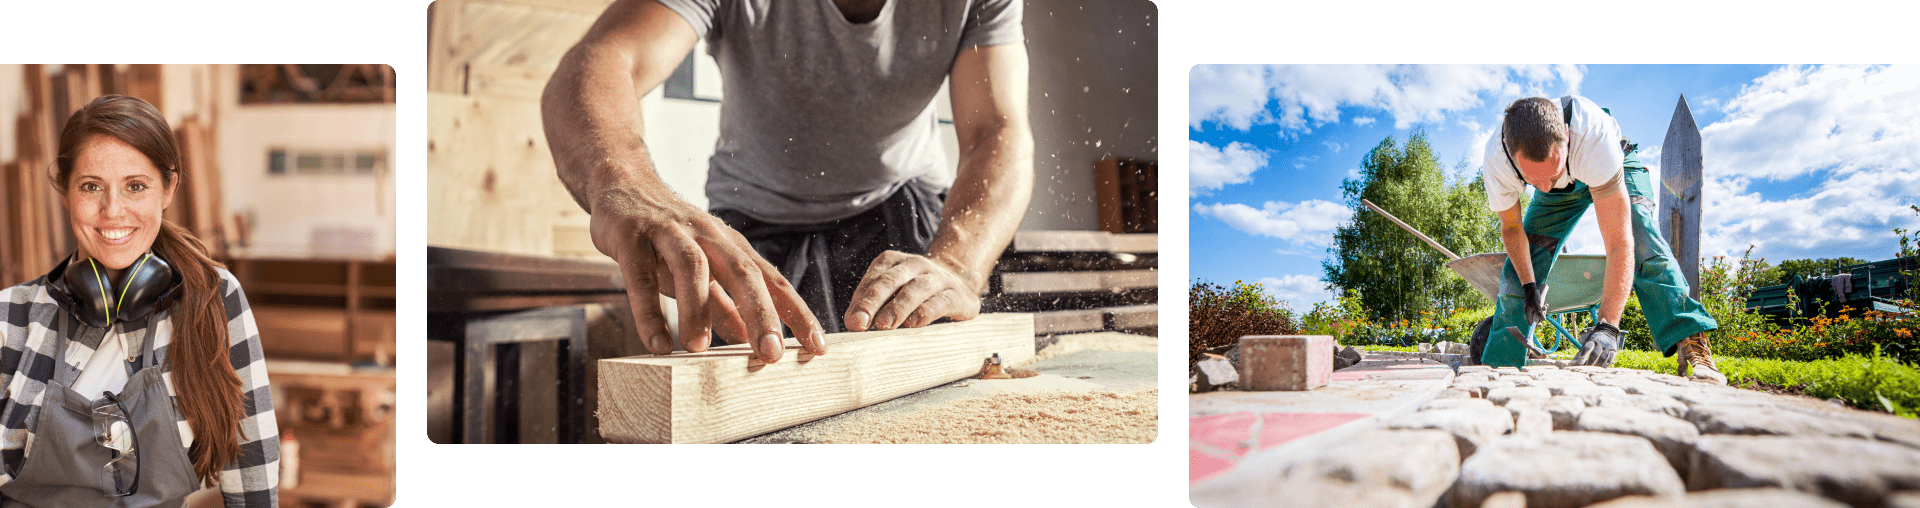 Stimmungsbild Design für Gewerke wie Holzbau und Landschaftsbau